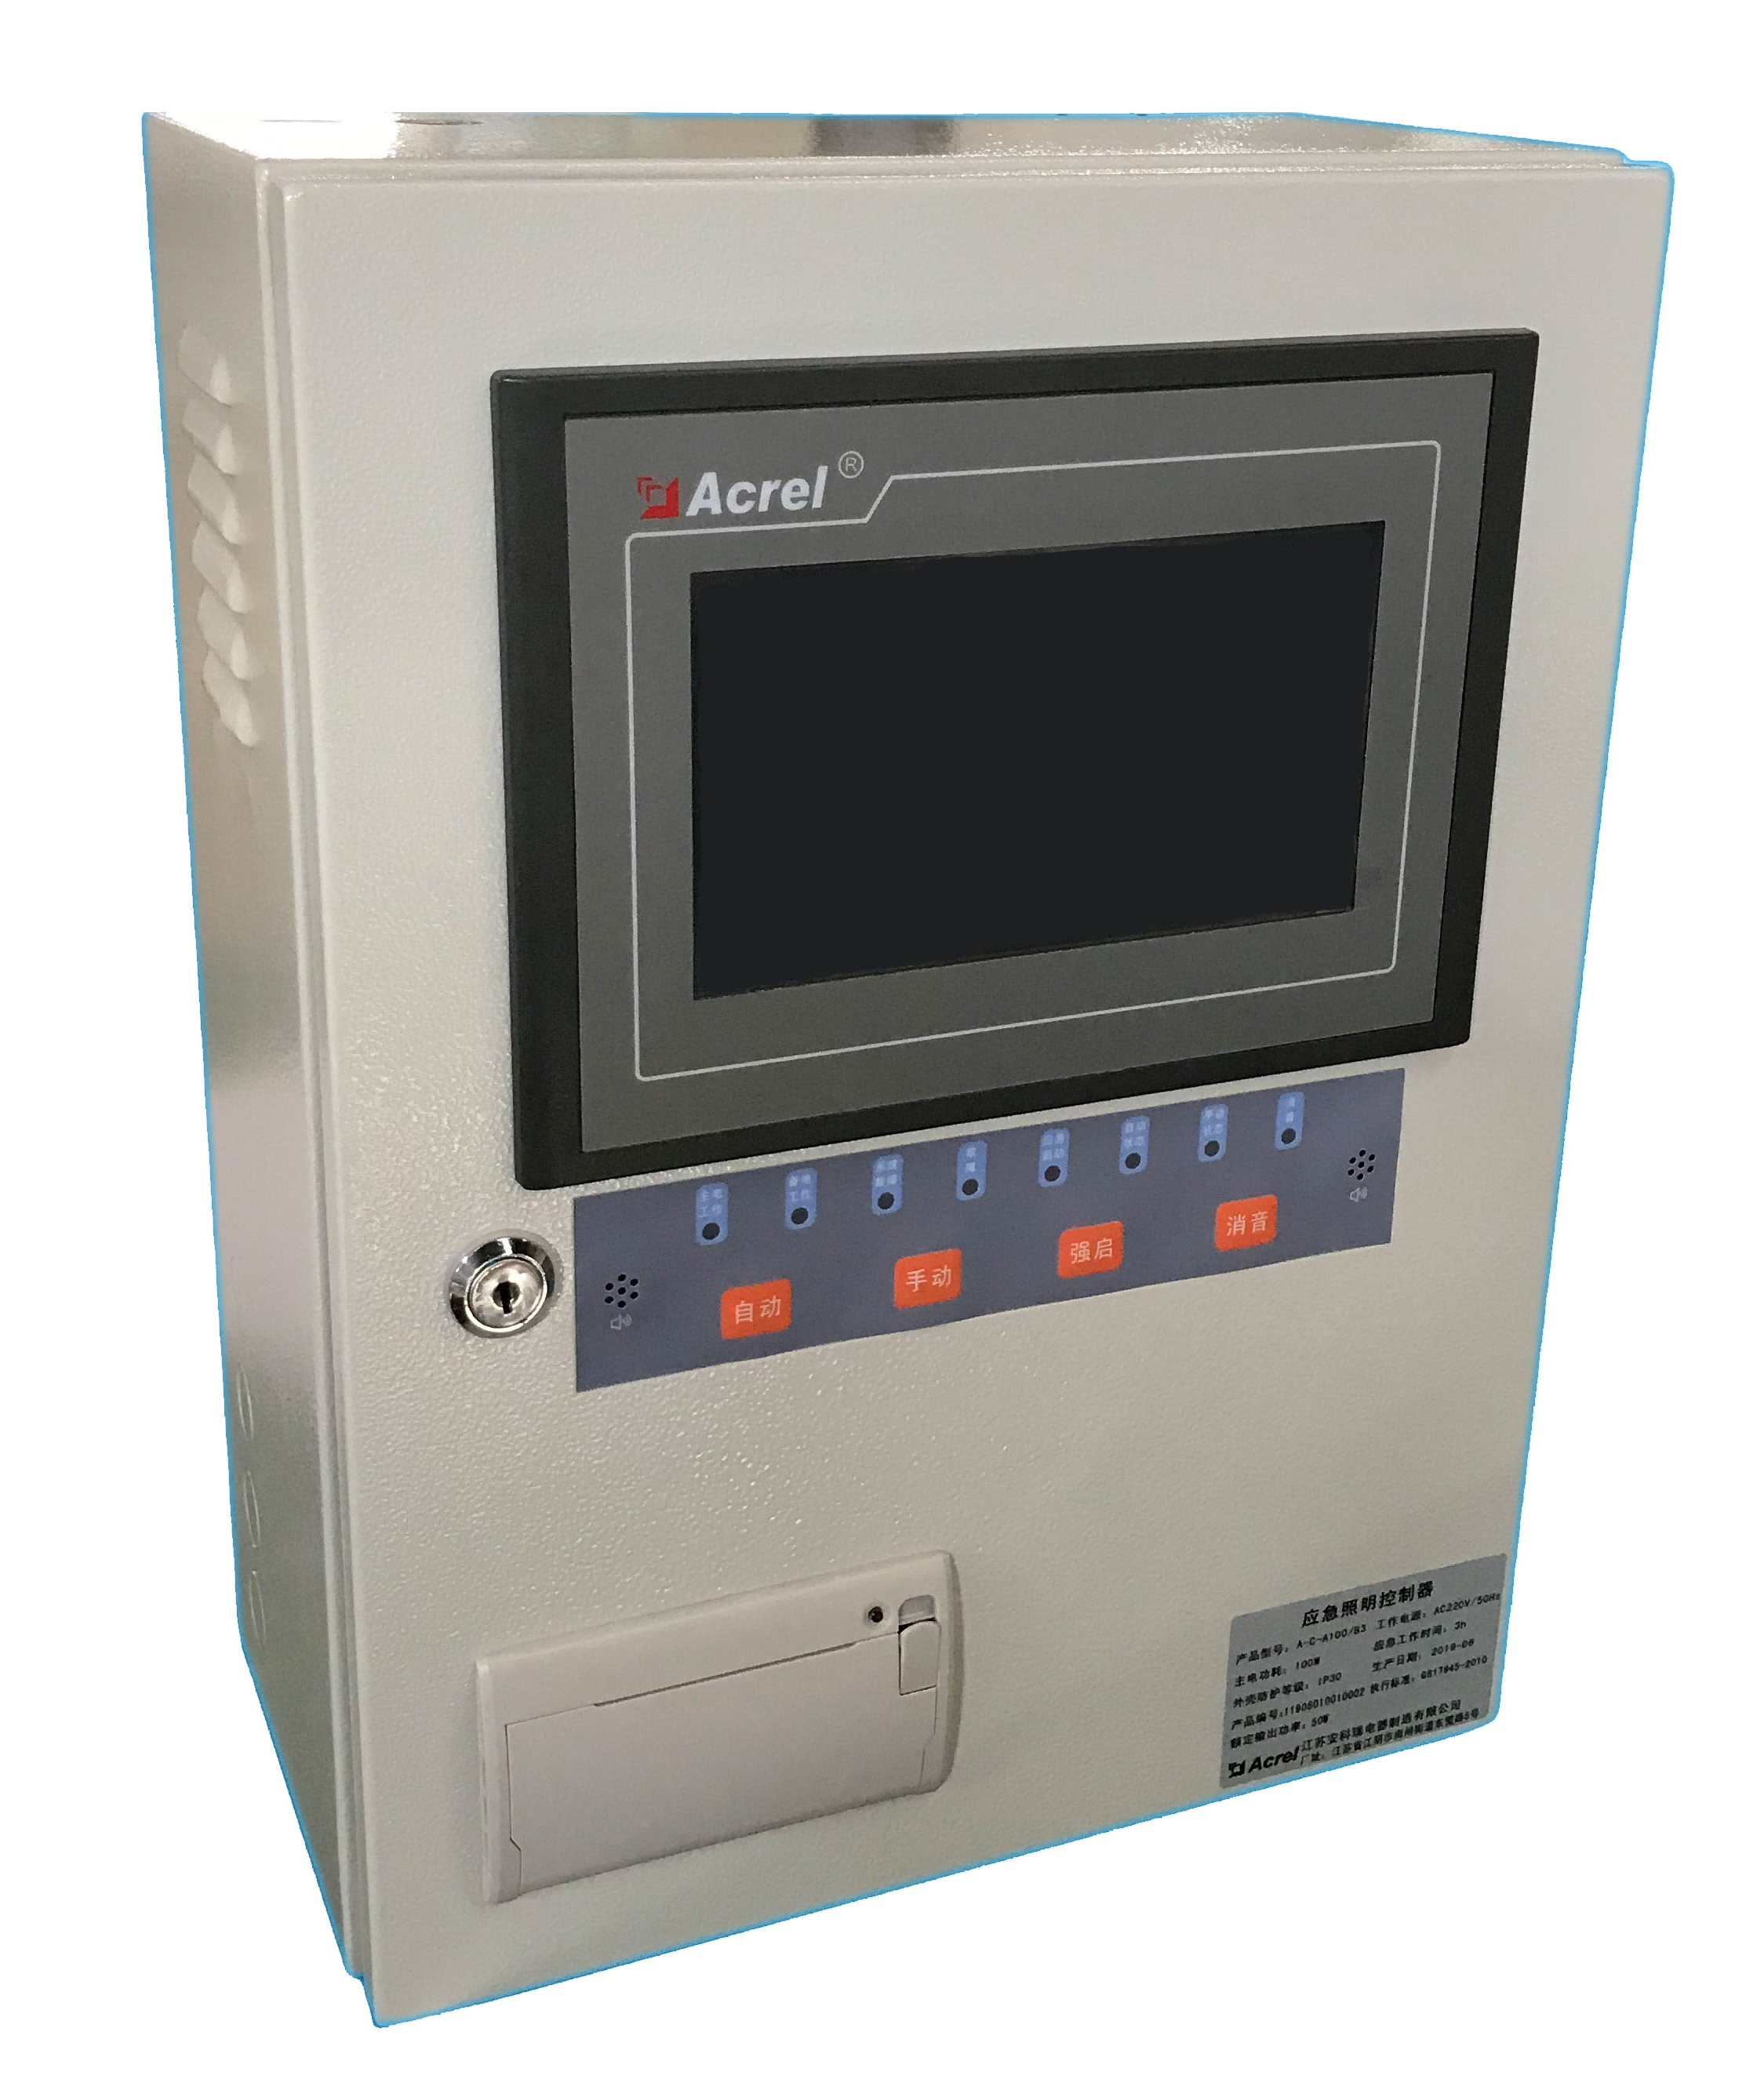 安科瑞 AFPM100/B3 消防設備電源狀態監控器 接收傳感器電壓電流信號 過欠壓聲光報警 控制繼電器閉合 回路故障事件記錄 二總線通訊控制傳感器